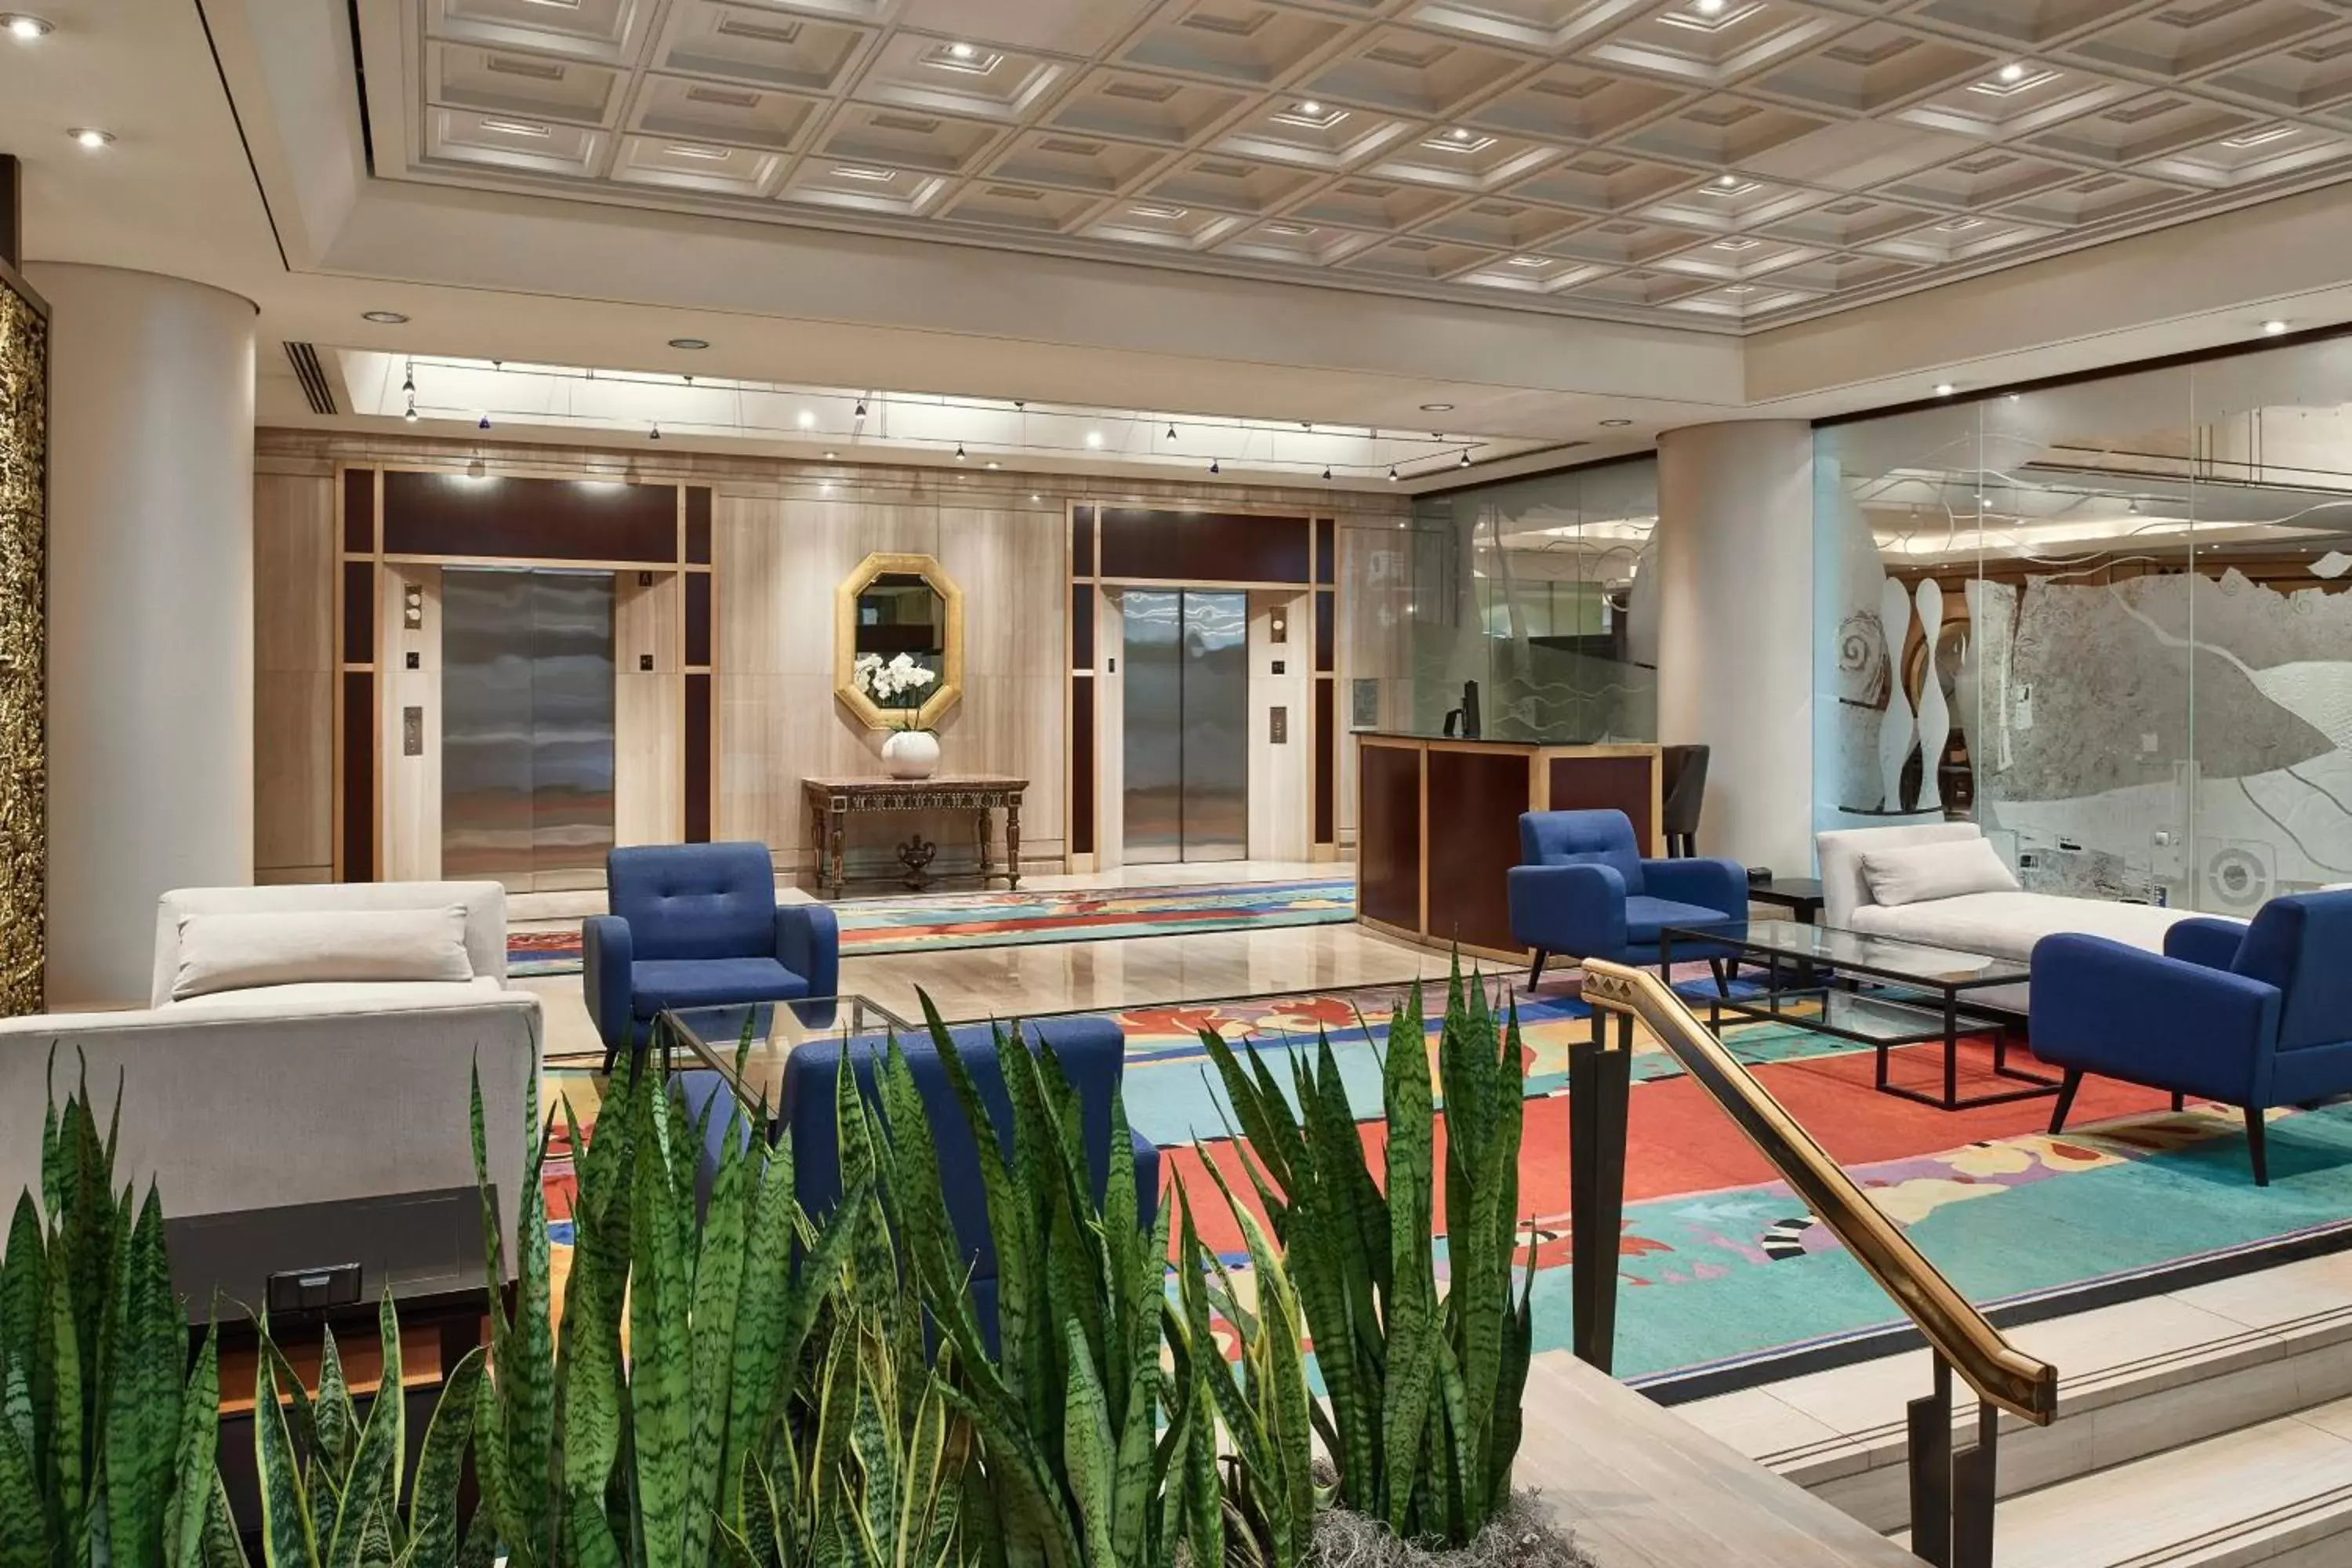 Lobby or reception in Metropolitan Hotel Vancouver